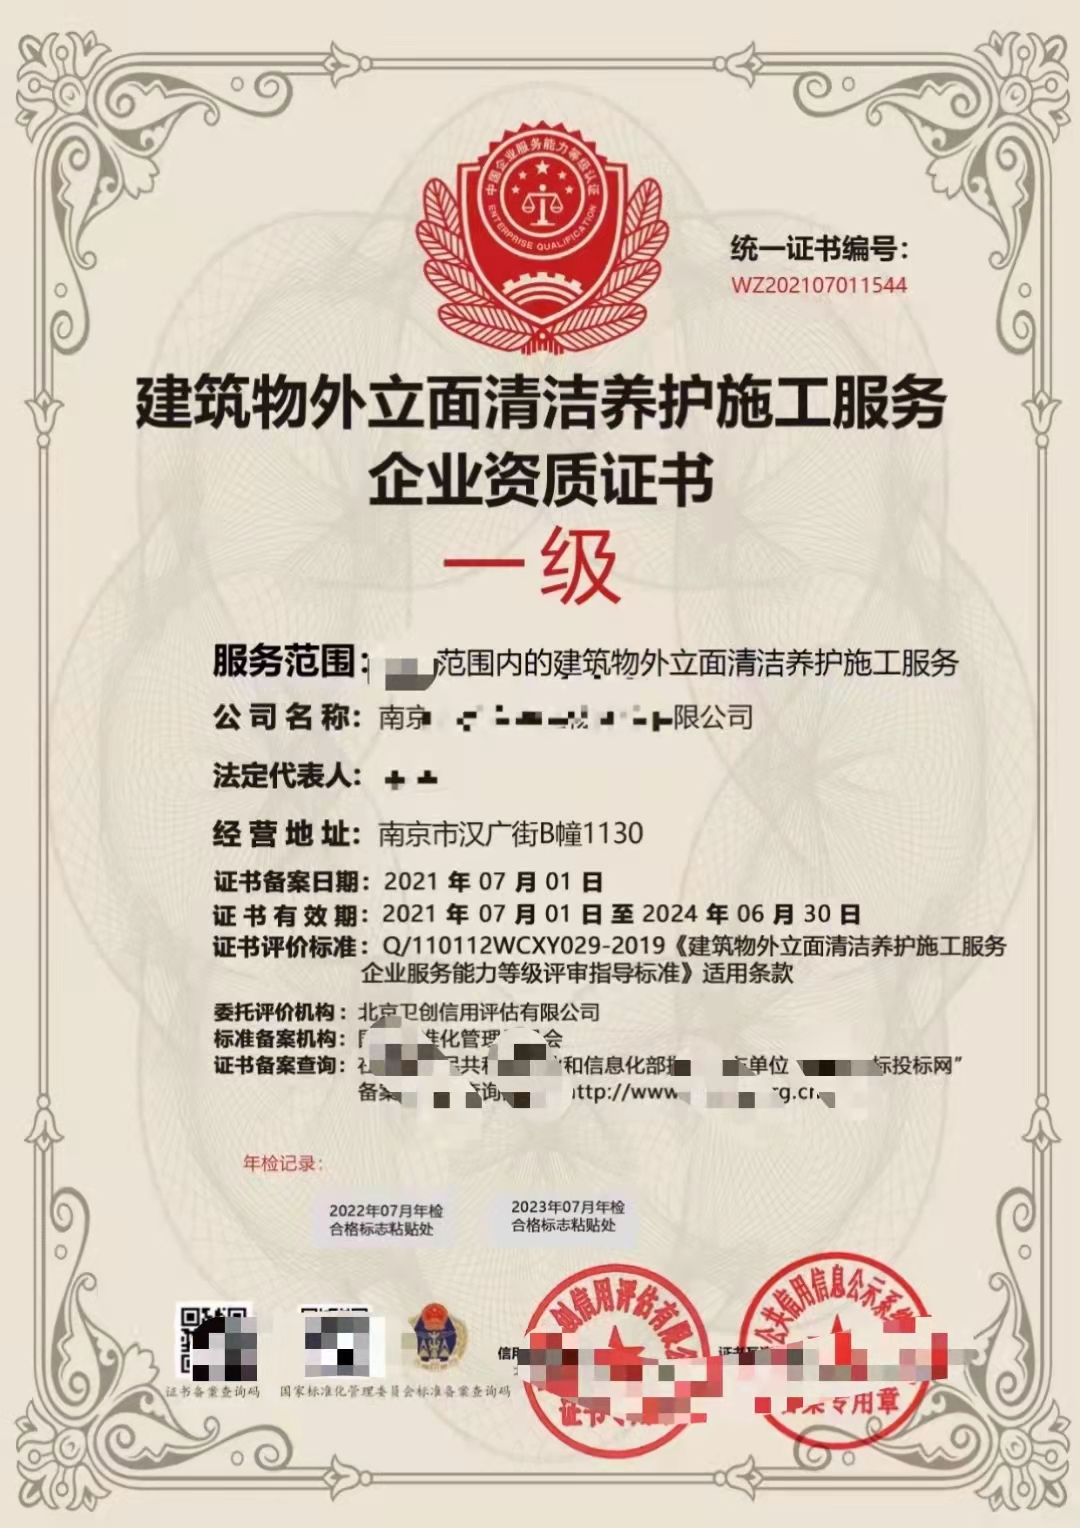 杭州油罐清洗服务企业资质证书申报流程